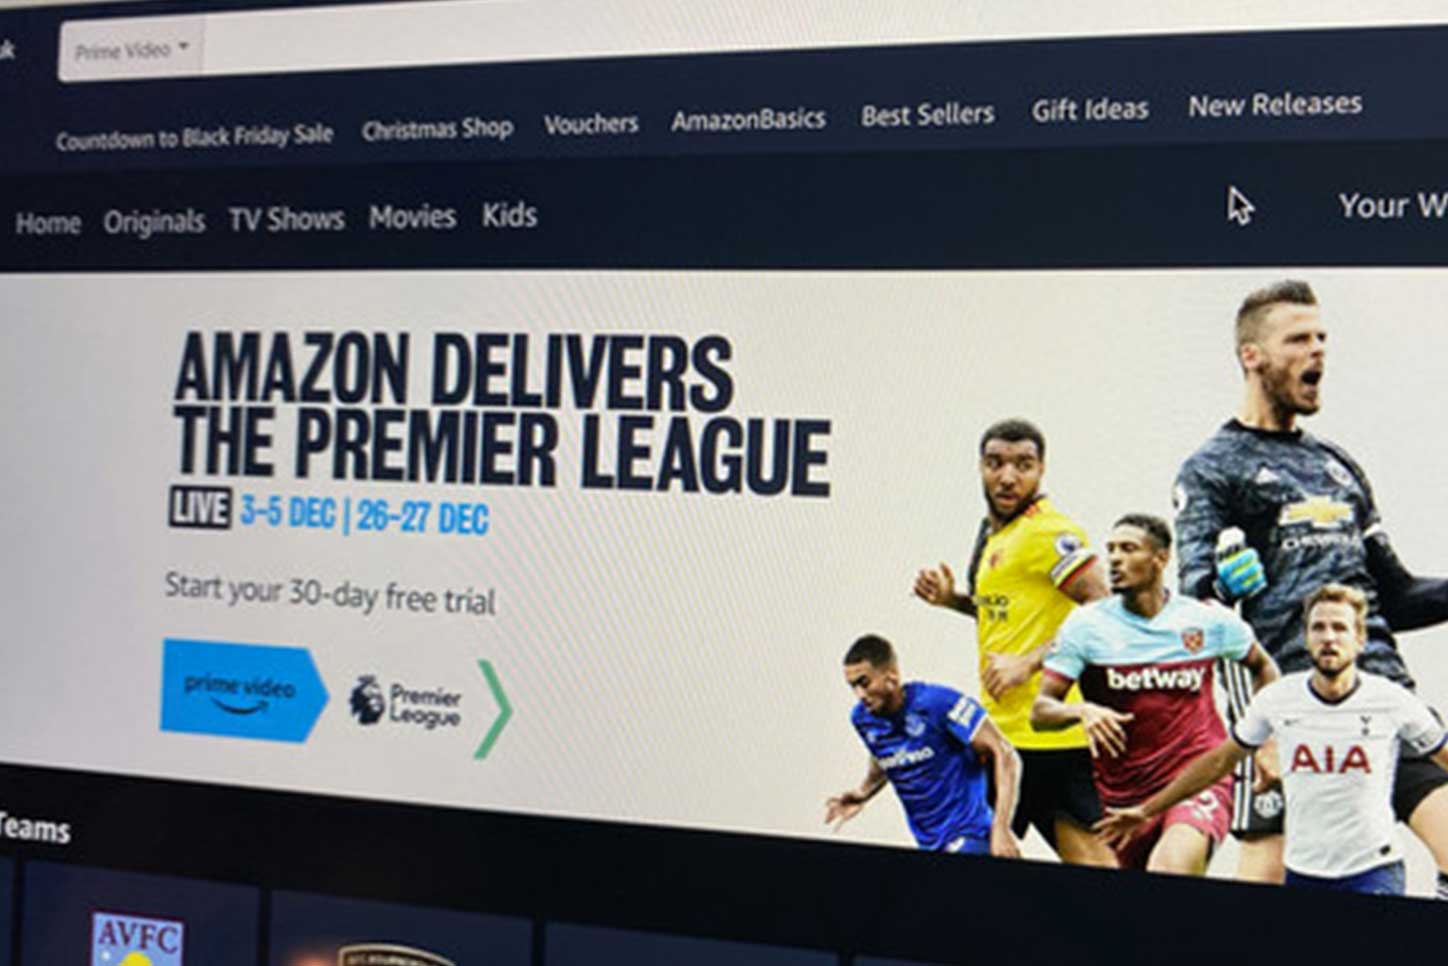 financialounge -  Amazon Amazon Prime Video calcio diritti televisivi facebook